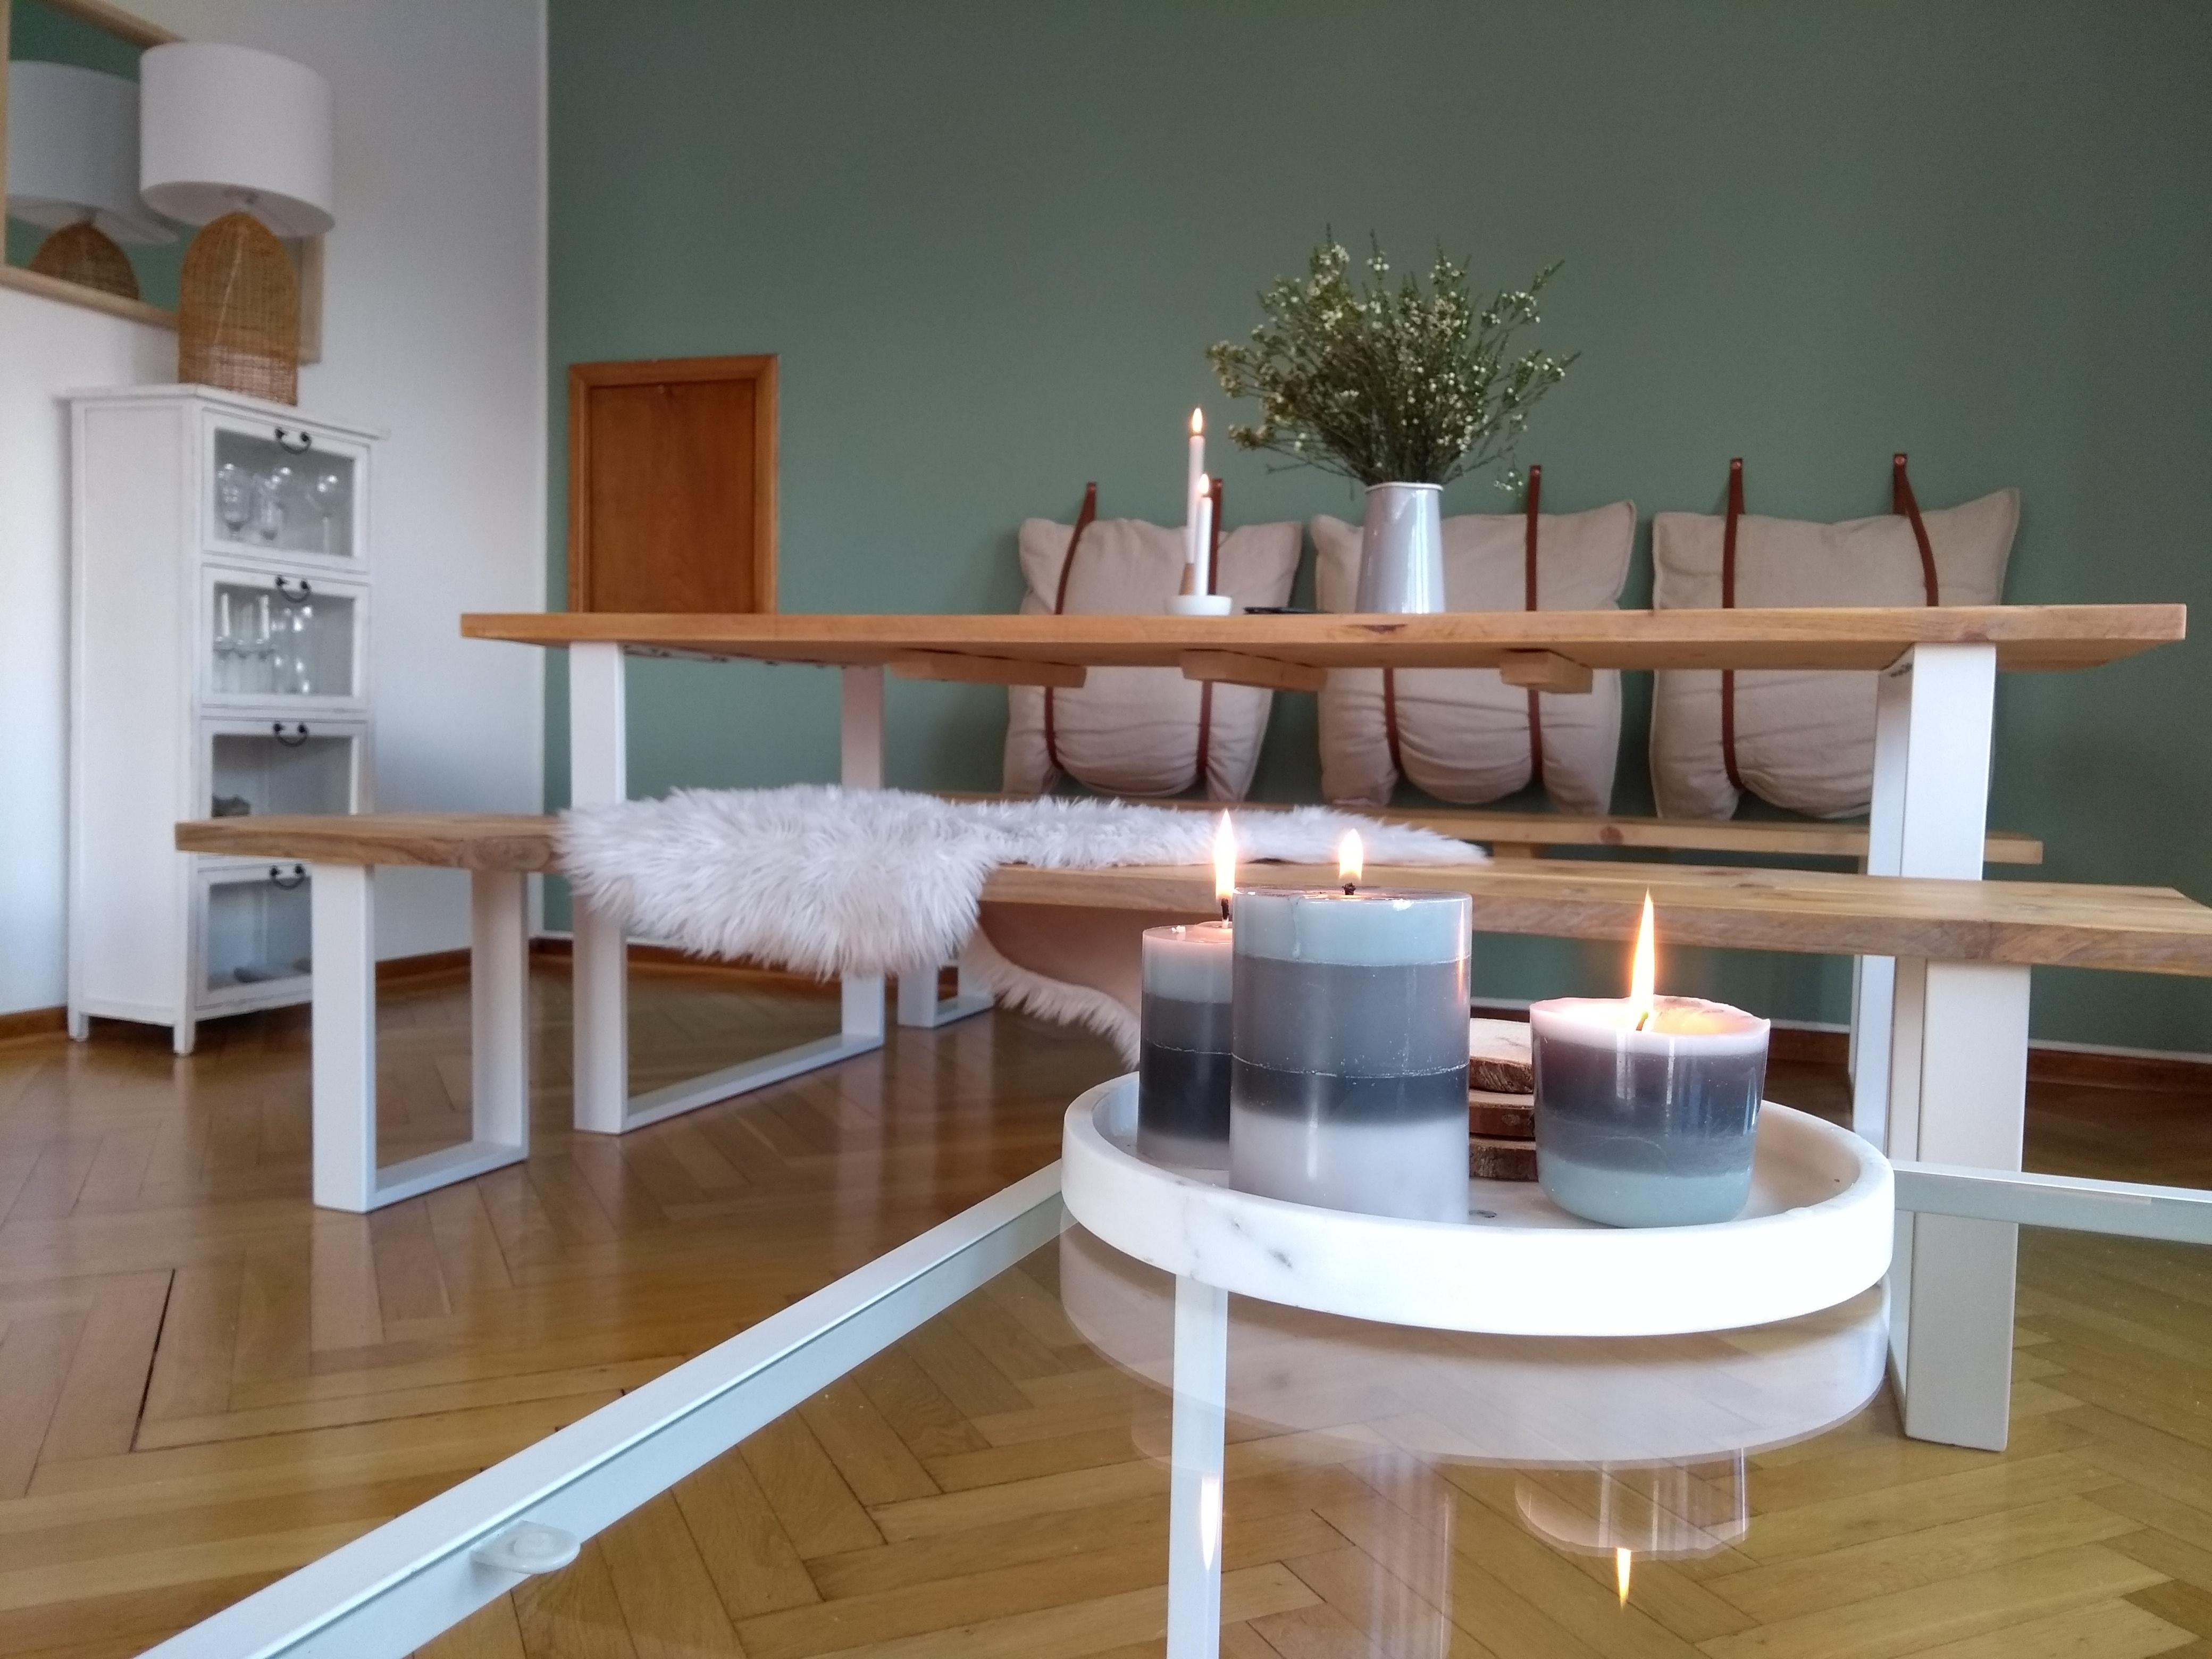  selbst gemachte Kerzen aus Wachsresten #diy #kerzen #wohnzimmer #marmor #esstisch #wandfarbe #grün #couchtisch